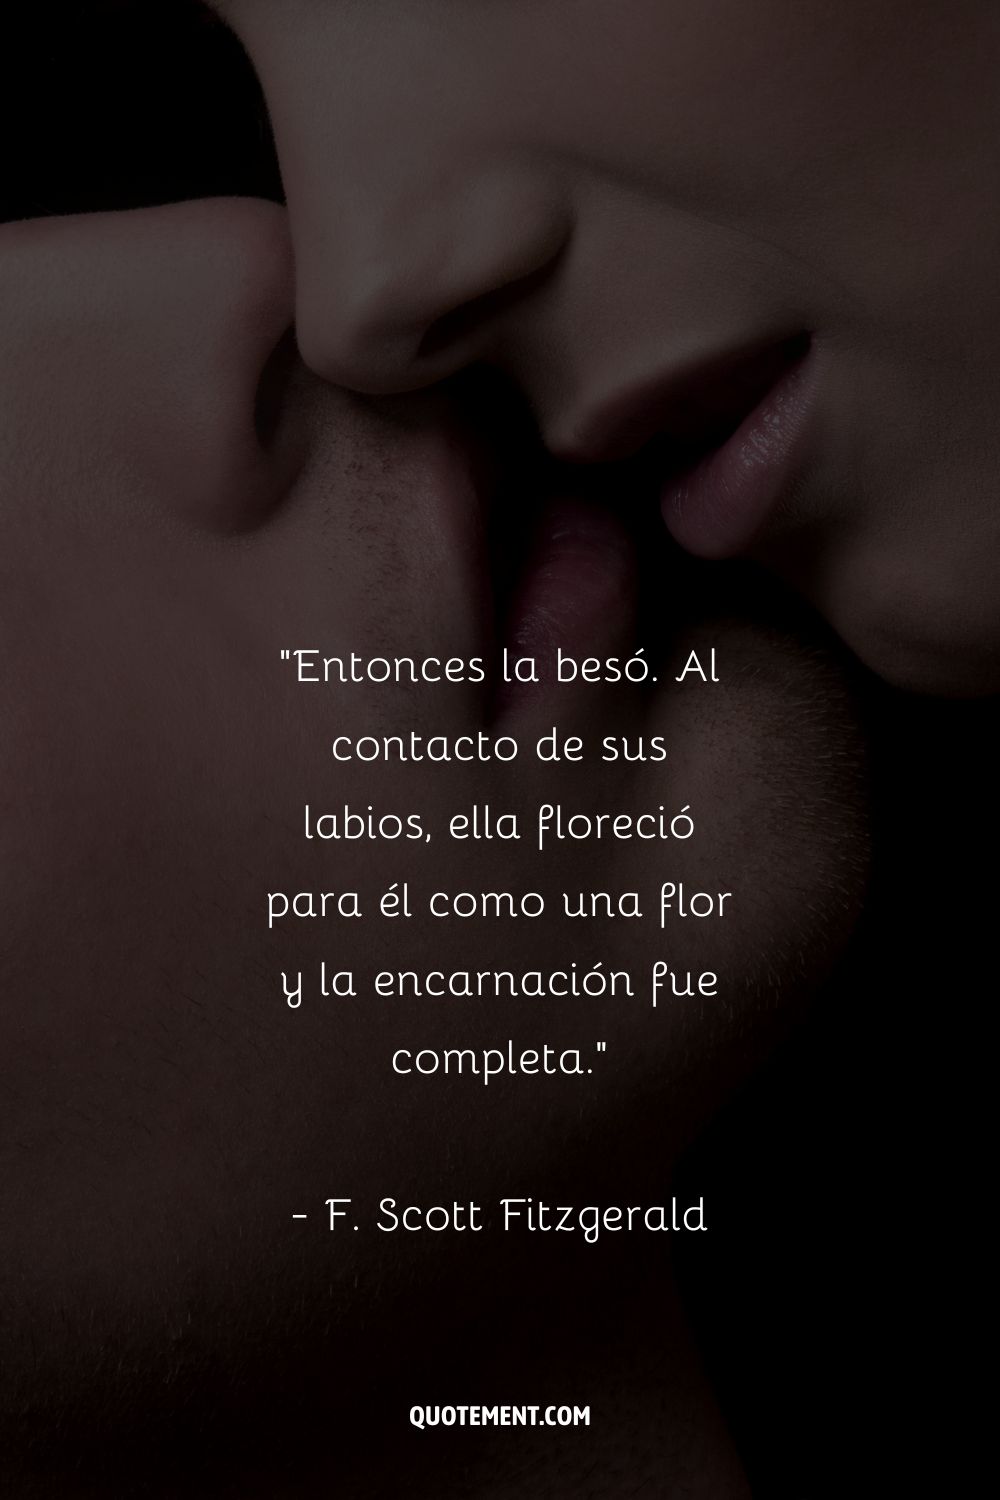 Entonces la besó. Al contacto de sus labios, ella floreció para él como una flor y la encarnación fue completa. - F. Scott Fitzgerald